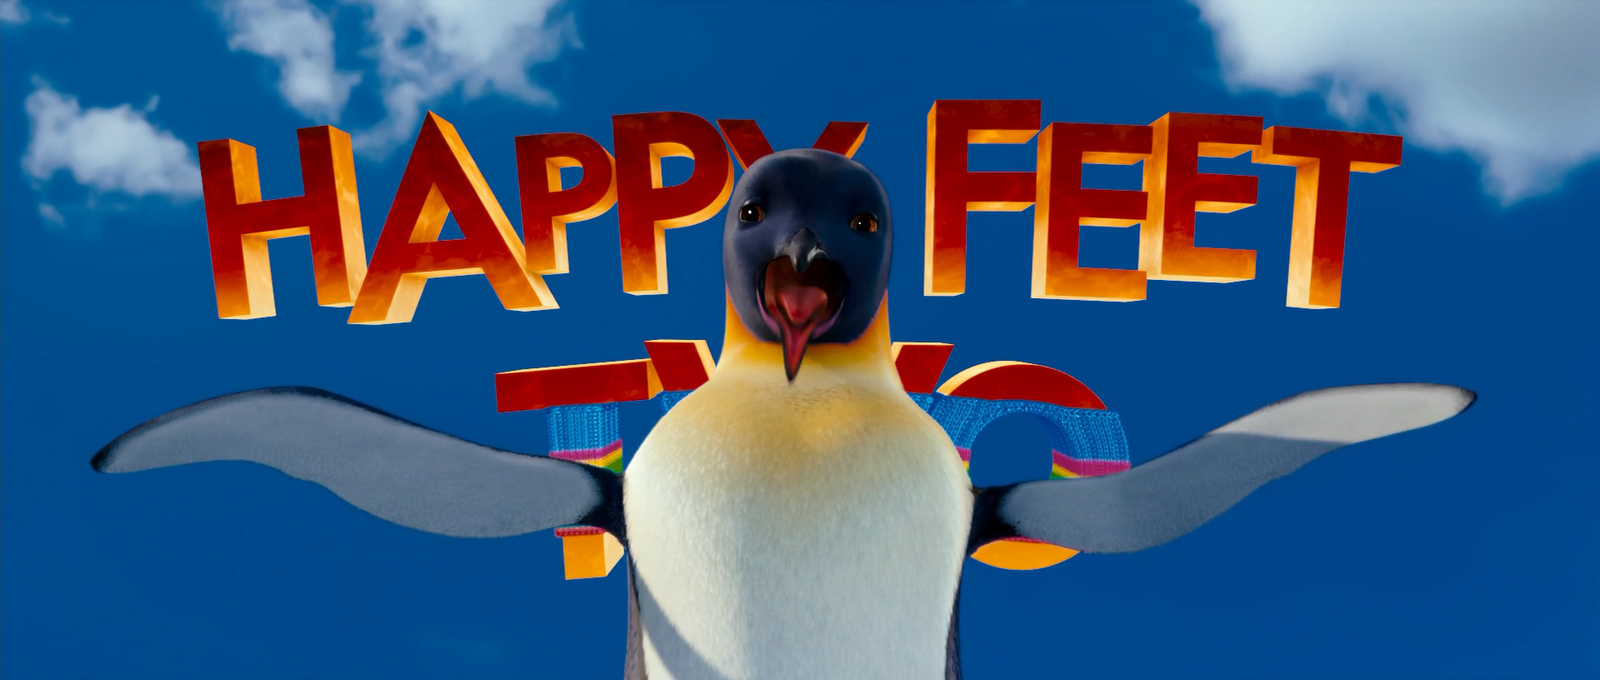 Happy Feet 1 1080p Latino 14